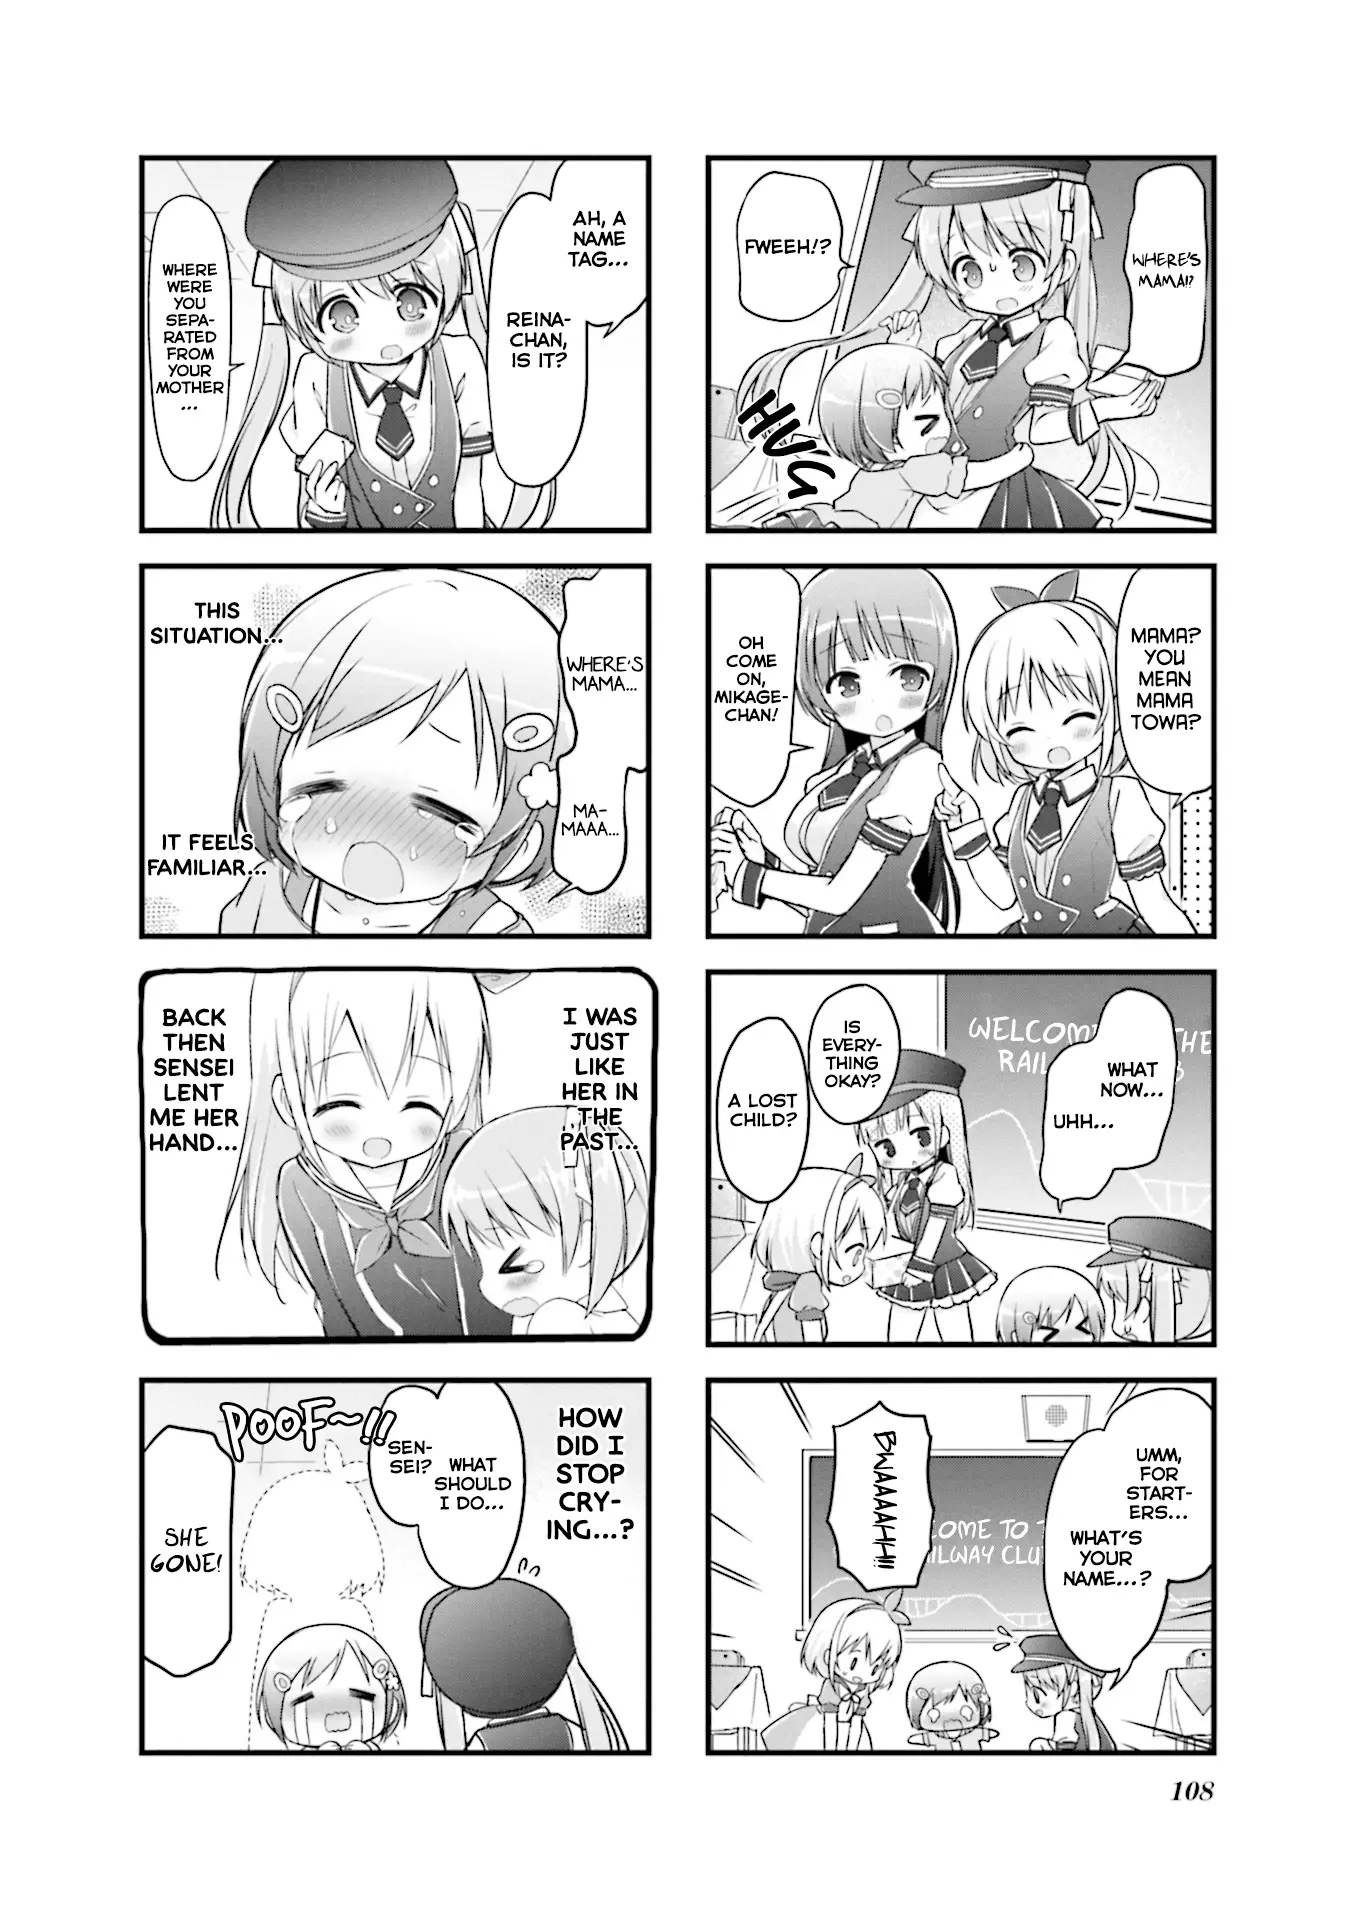 Hatsukoi*rail Trip - 13 page 4